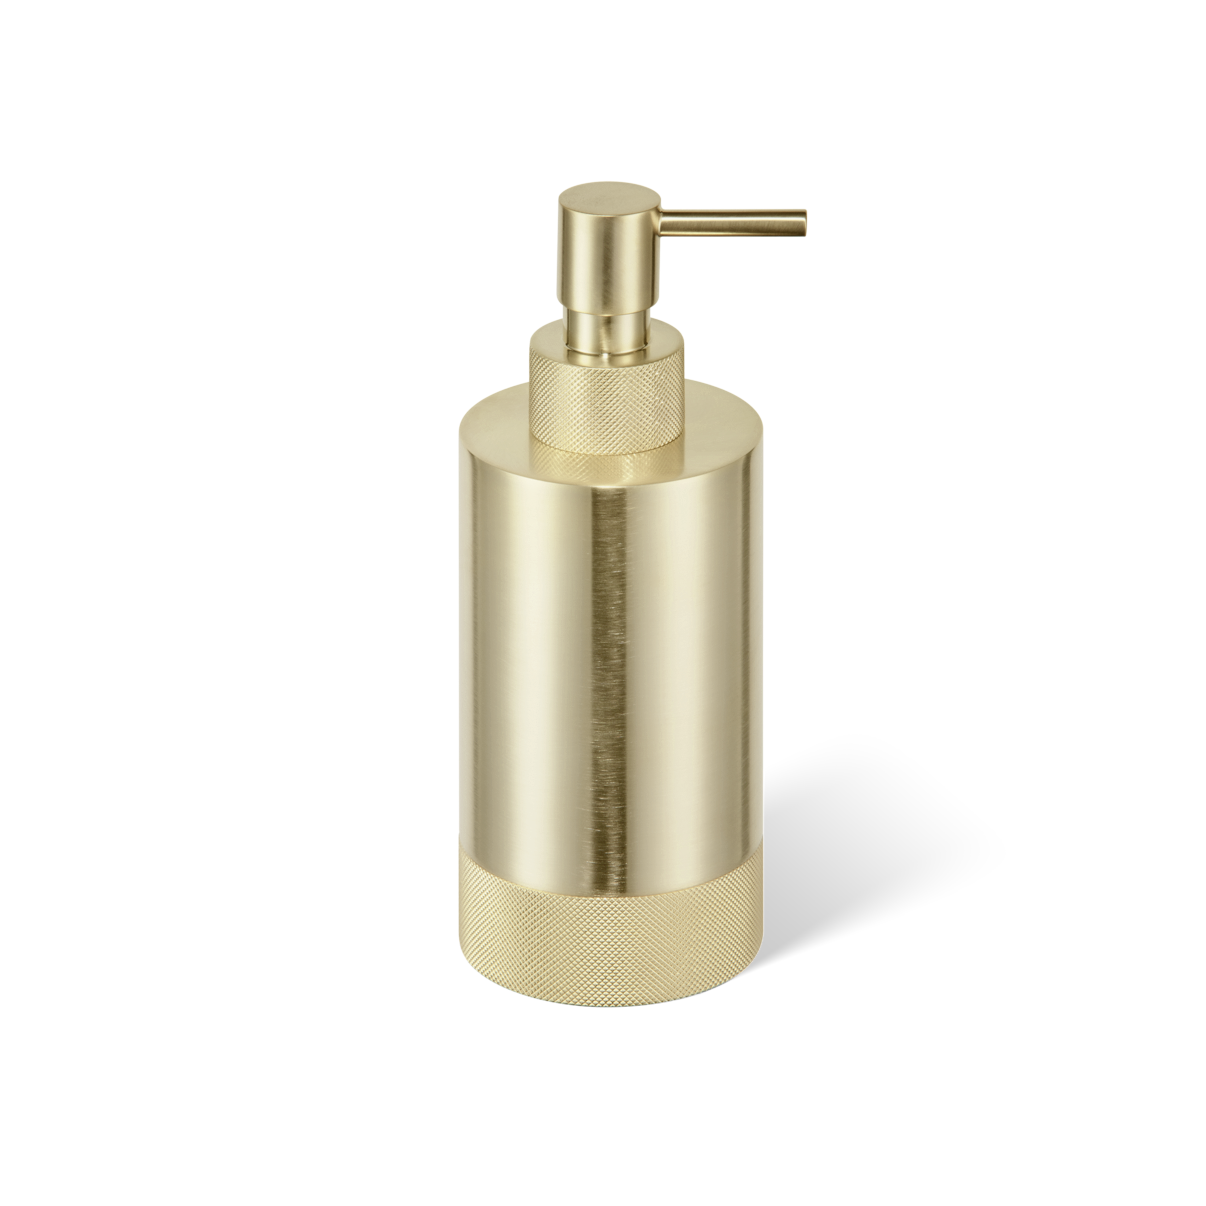 DW CLUB SSP 1 Soap dispenser Gold Matte 24 Carat / Gold Matte